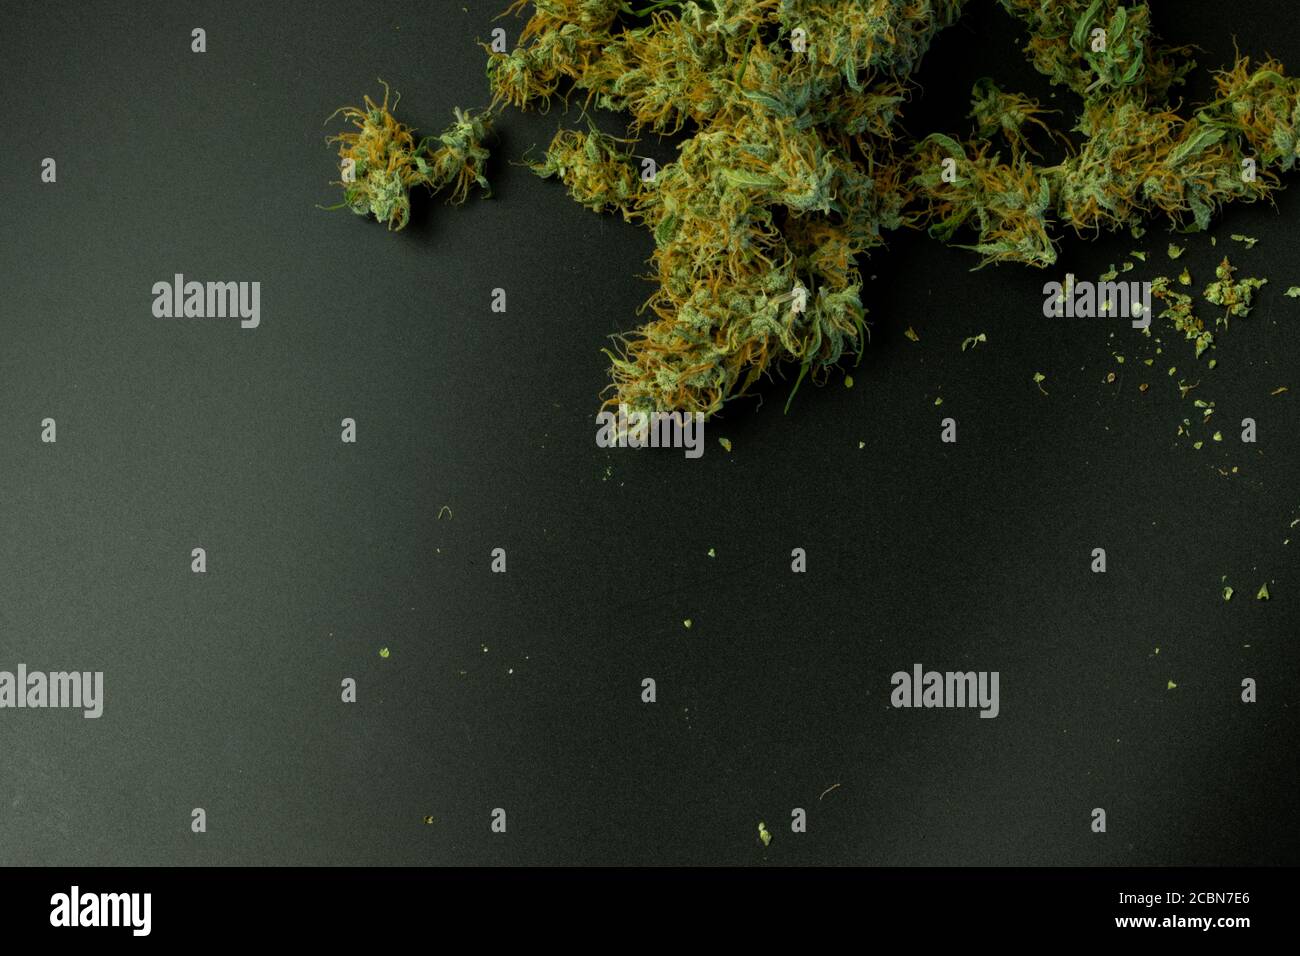 Bourgeons de cannabis sur fond noir avec espace de copie Banque D'Images